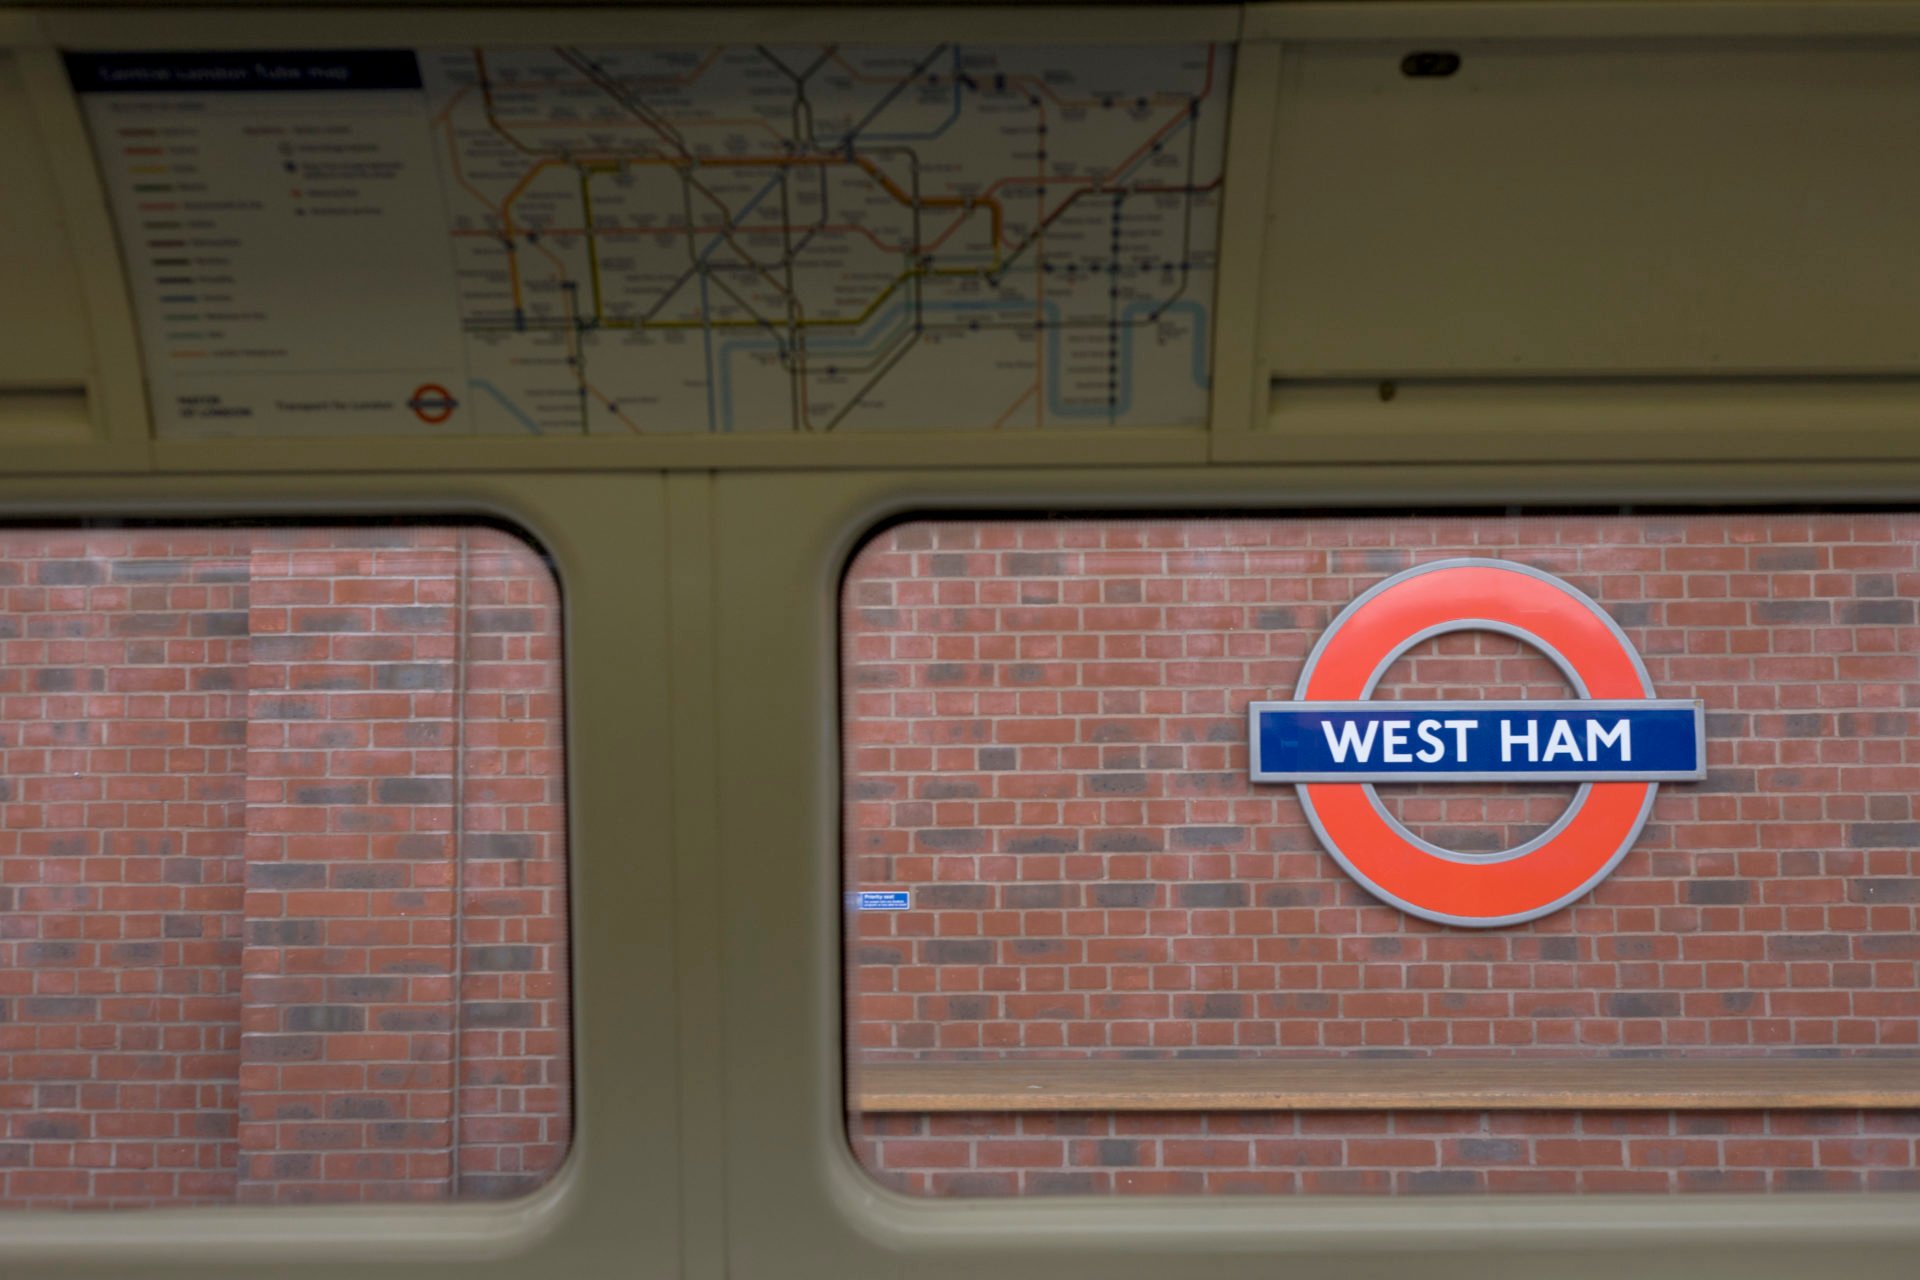 UK - London - West Ham tube station sign